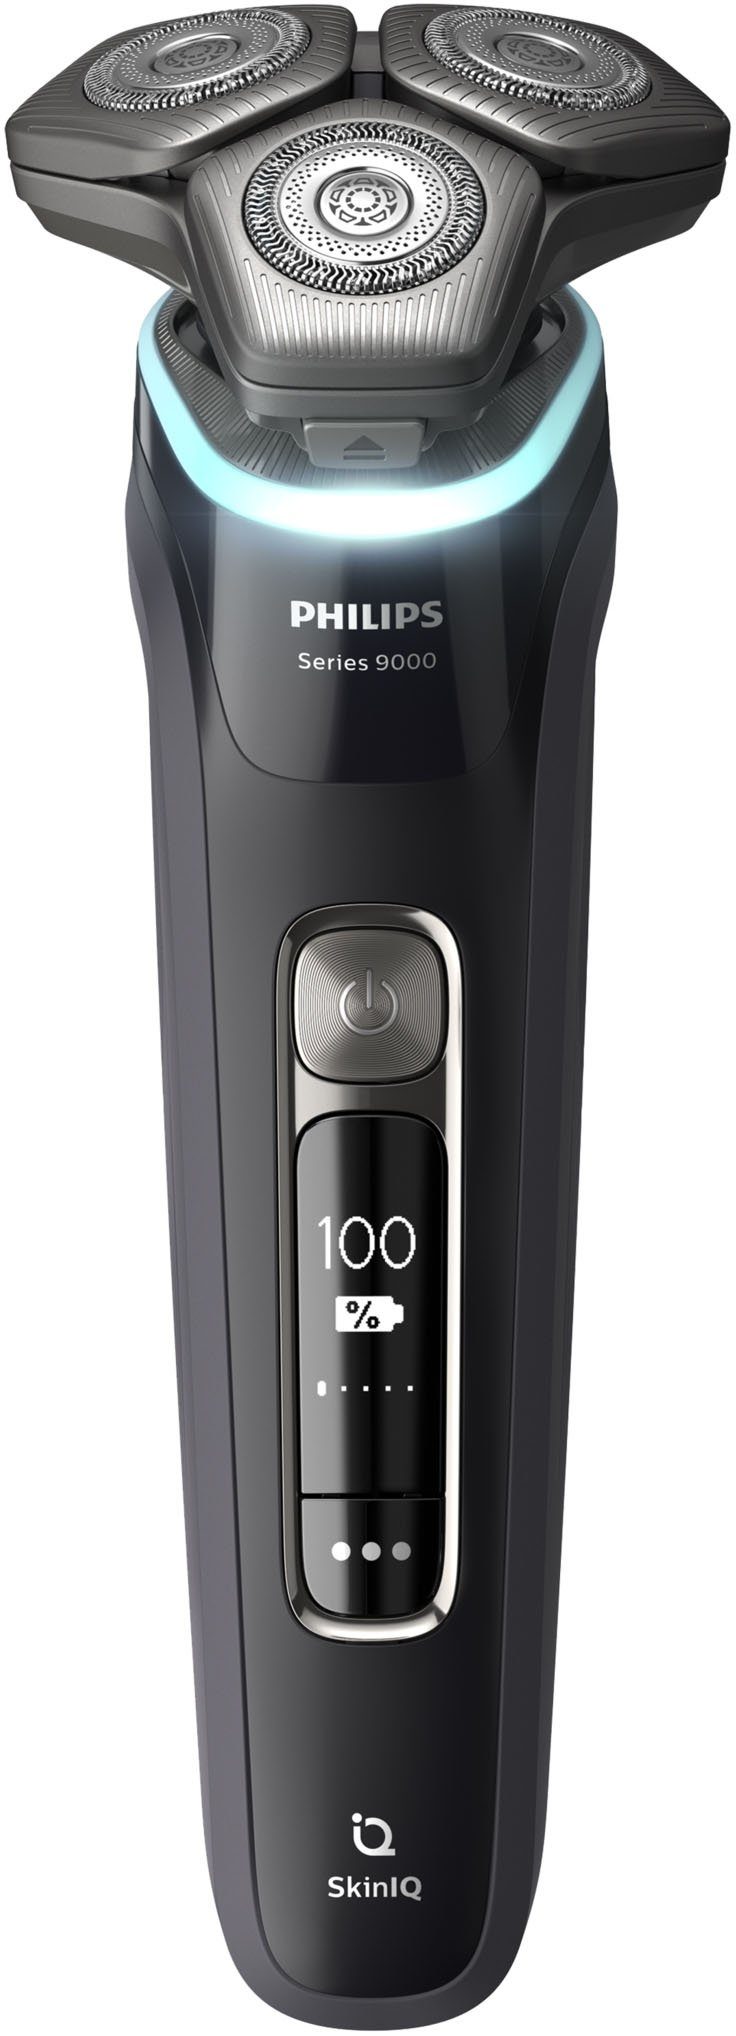 Philips Elektrorasierer Series 9000 S9986/55, Reinigungsstation, mit Skin  IQ Technologie, inkl. Reinigungsstation, Ladestand und Etui